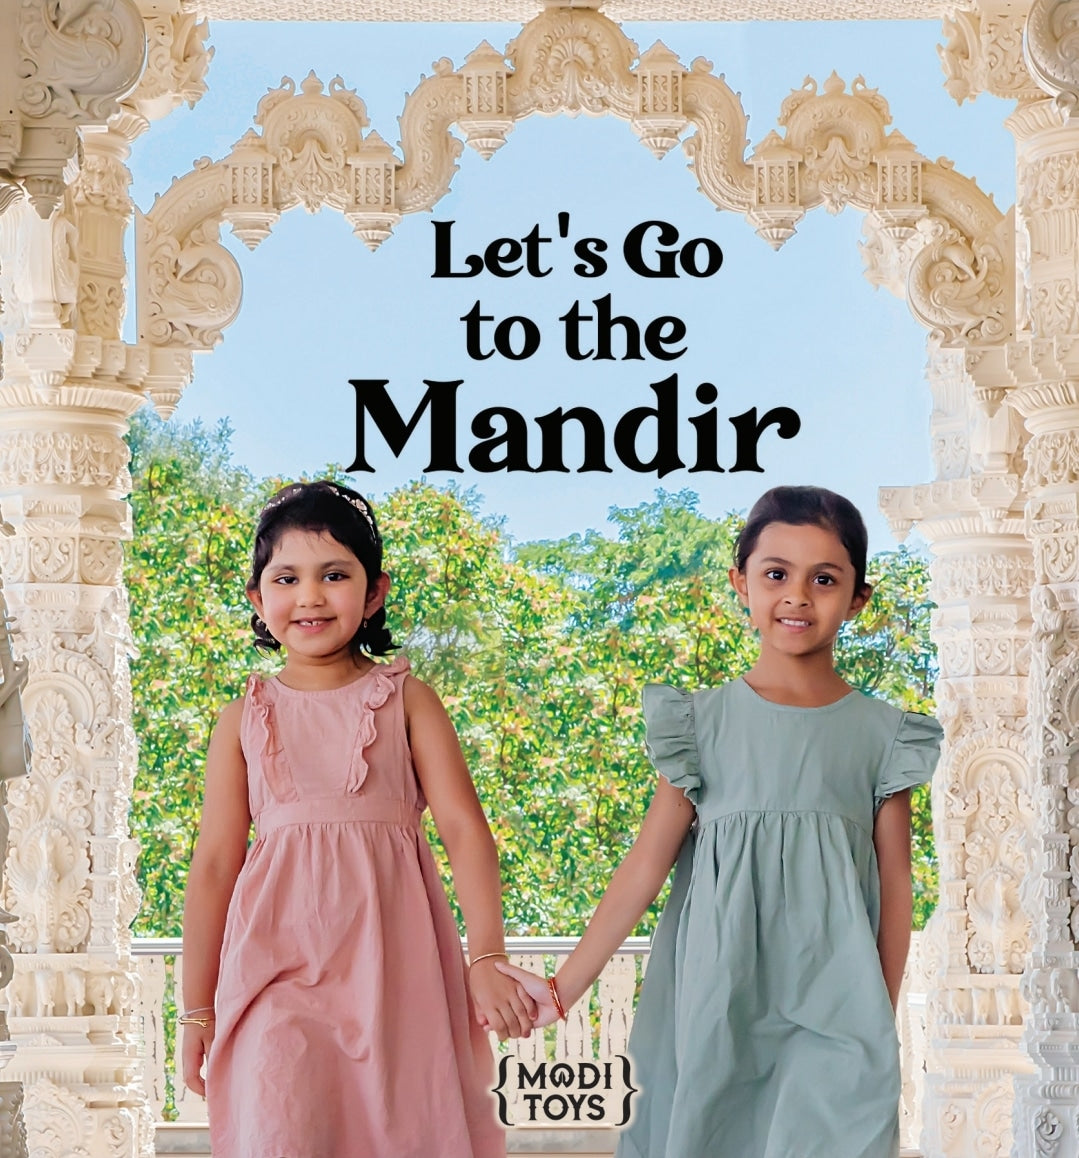 Book: Let's Go to the Mandir